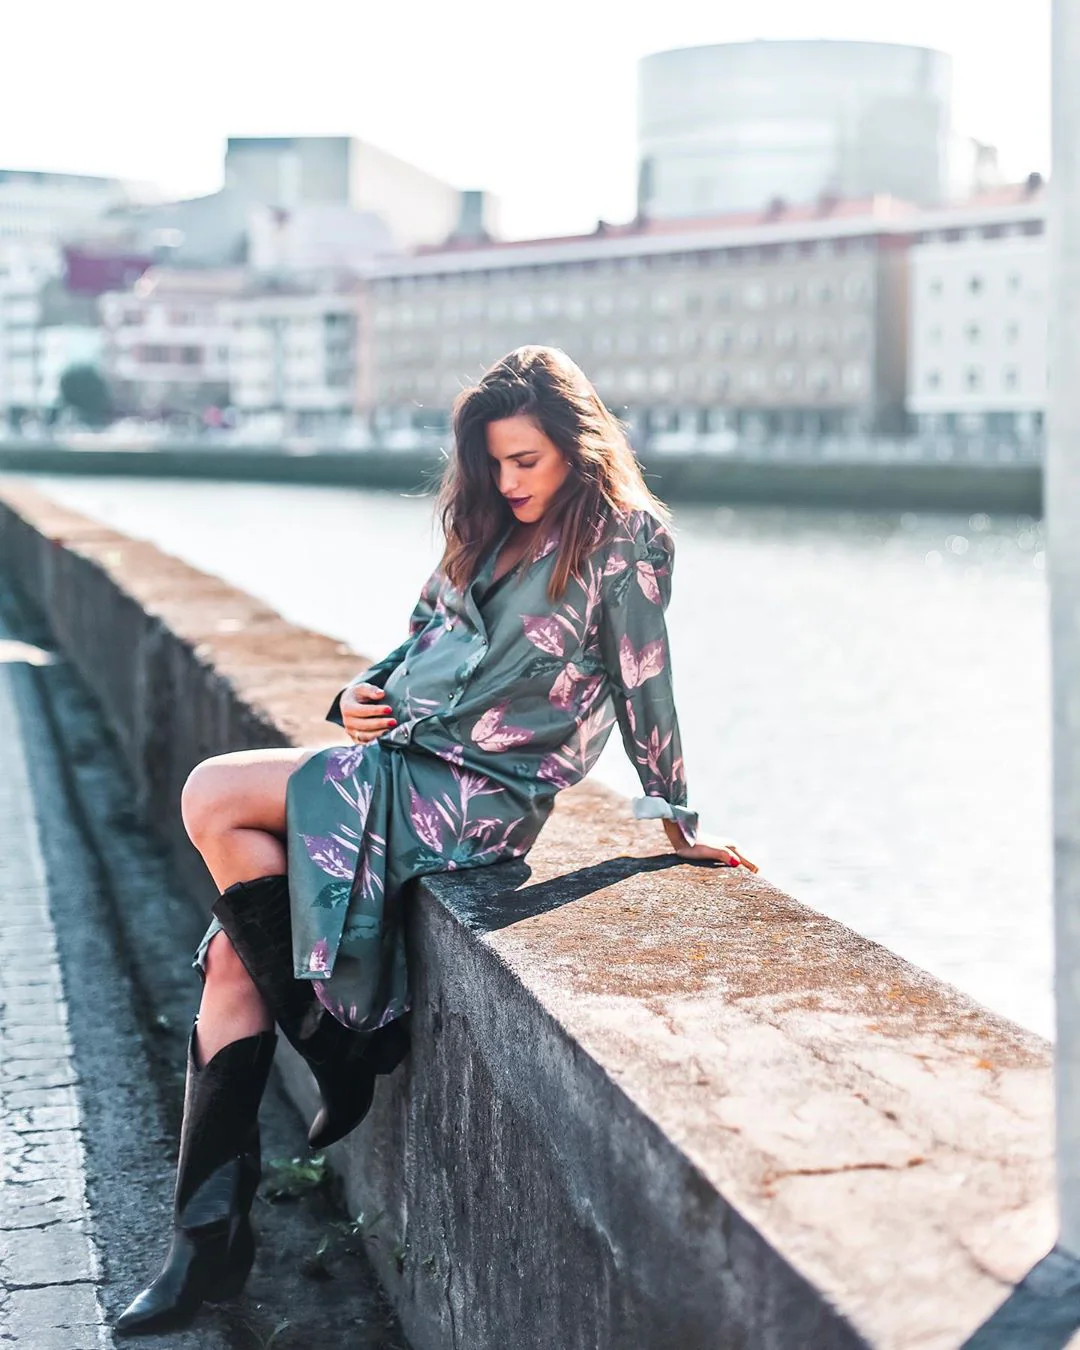 La periodista e 'influencer' canaria Ingrid Betancor posa en la Ribera de Deusto con un vestido camisero de flores de la firma bilbaína Triana by C (139 euros). Las botas camperas son de la marca de calzado MAS34.